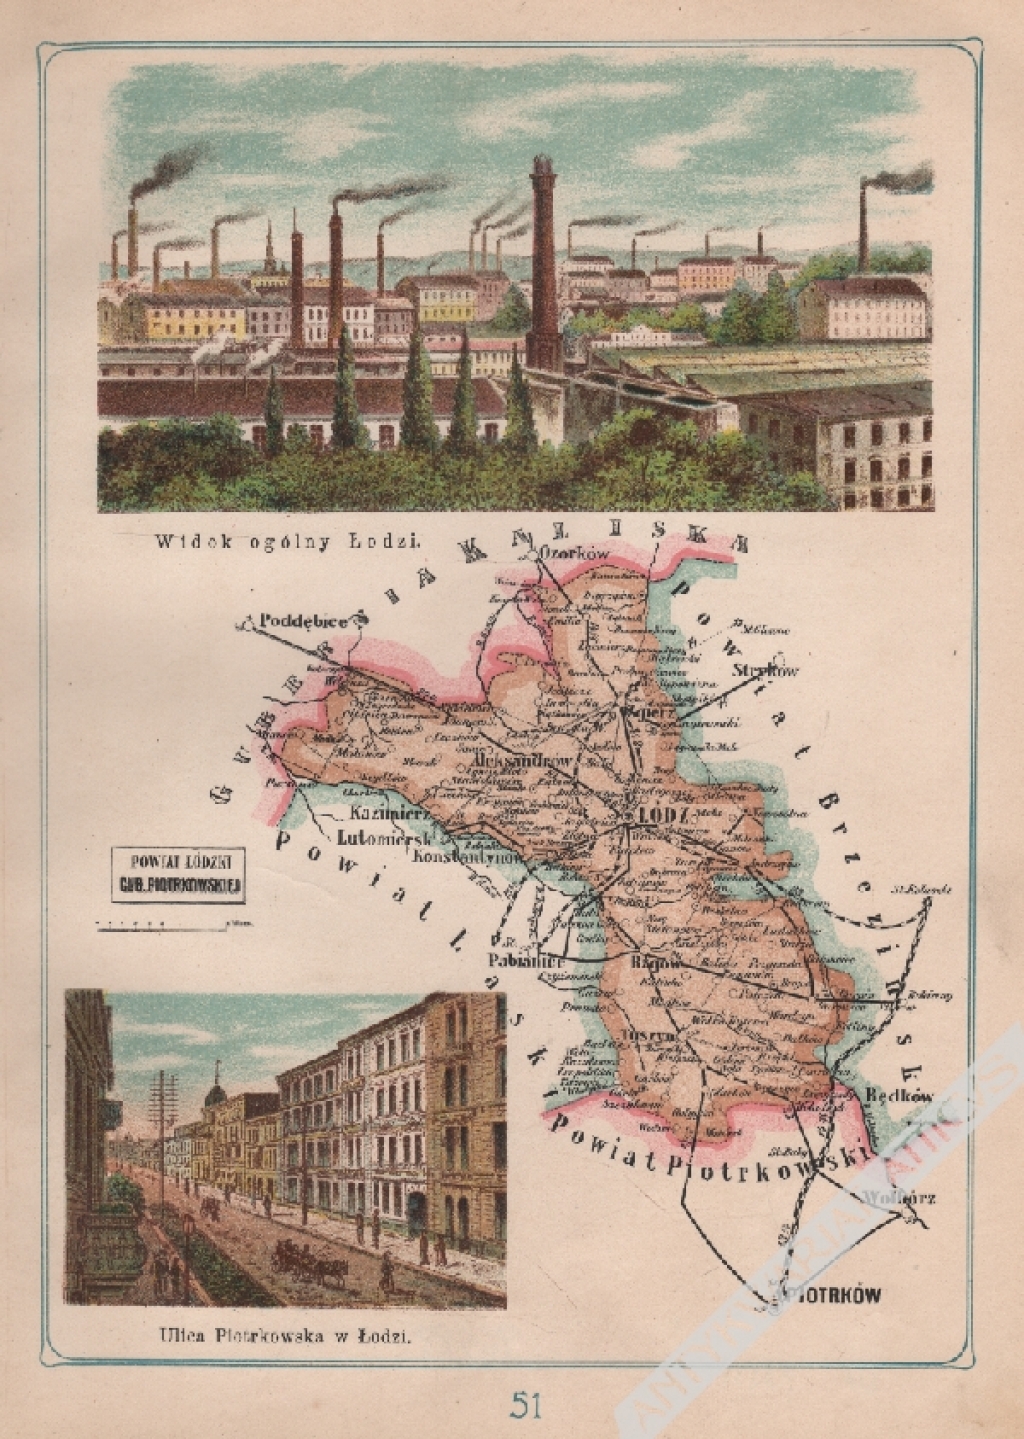 [mapa, 1907] Powiat Łódzki Guberni Piotrkowskiej. Widok ogólny Łodzi. Ulica Piotrkowska w Łodzi